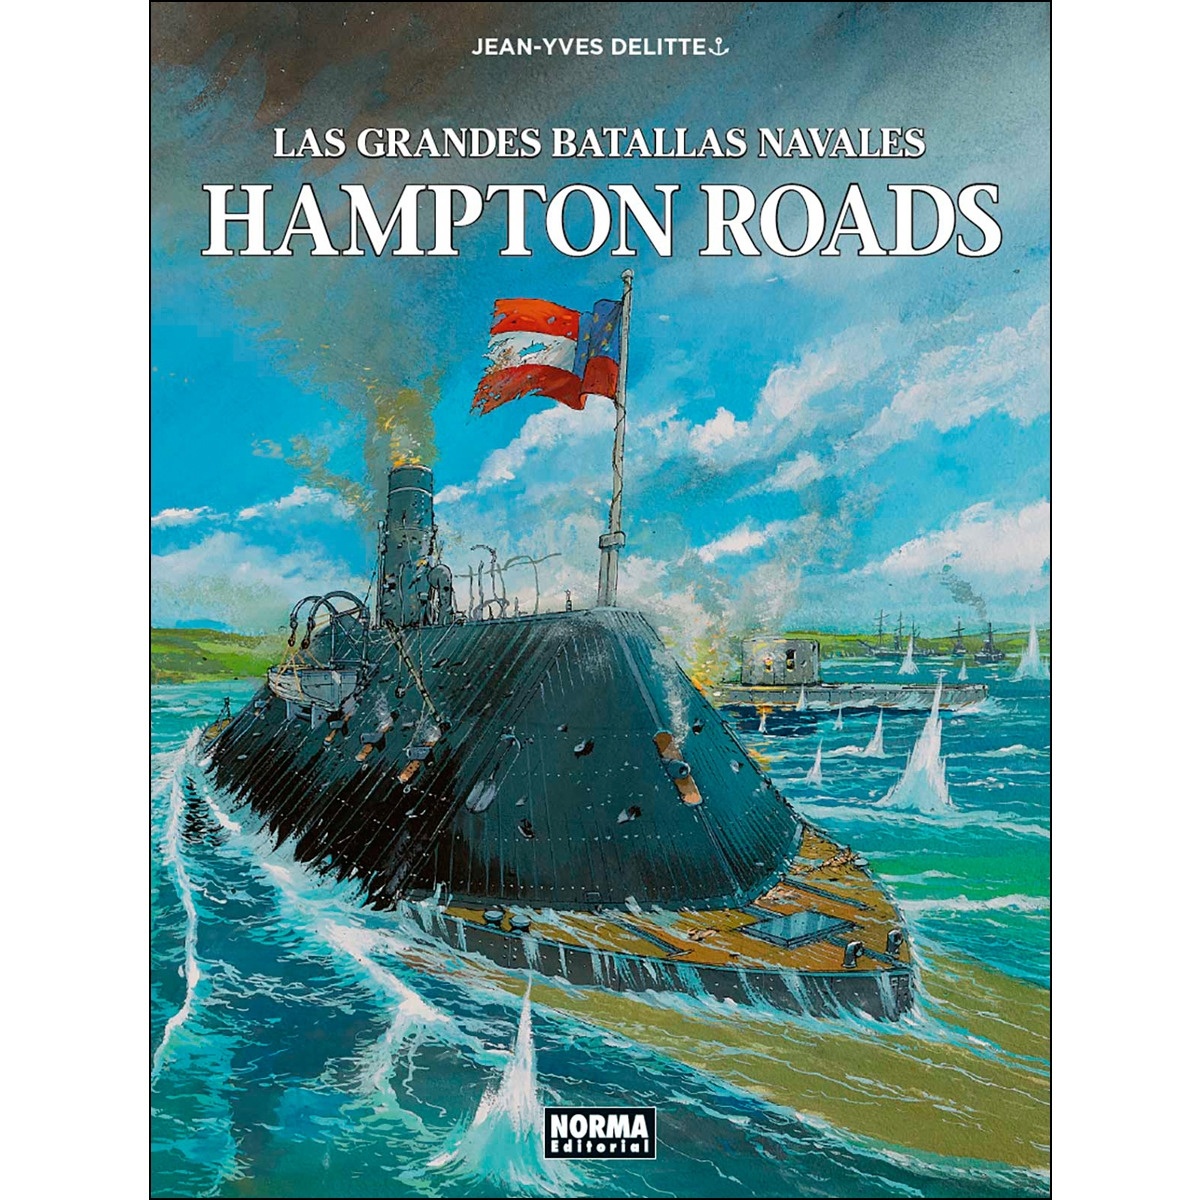 Las grandes batallas navales 6. Hampton roads